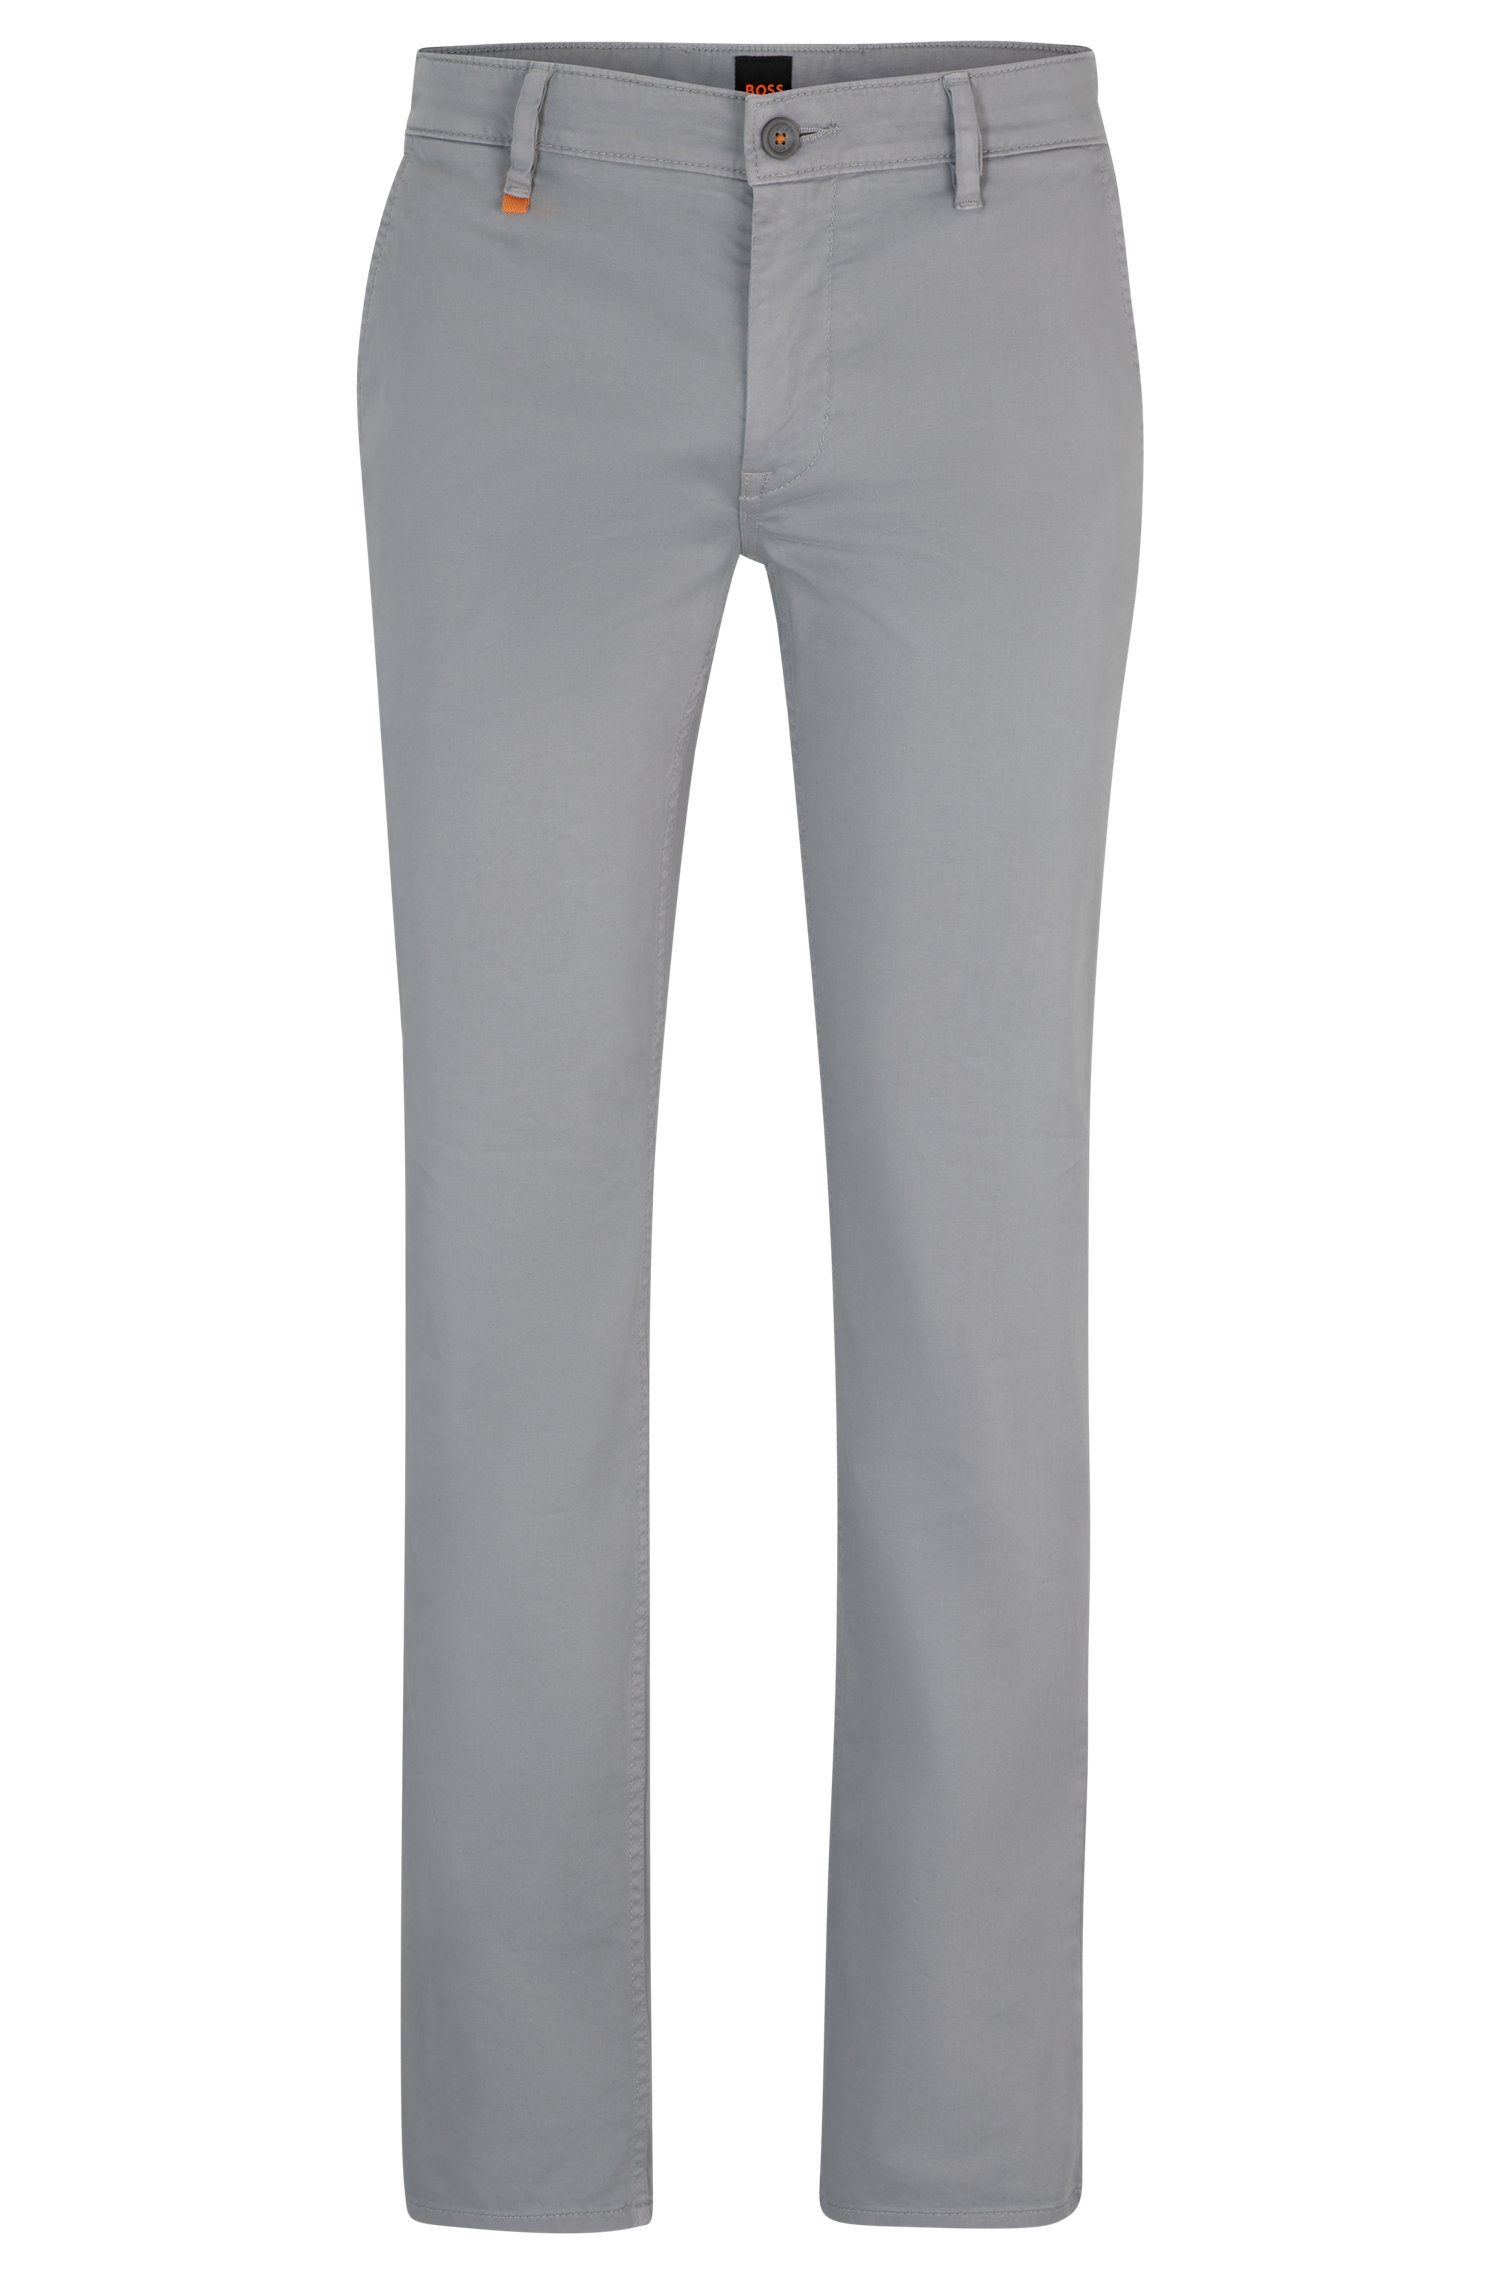 BOSS ORANGE Chinohose Slim-Fit Hose aus elastischem Baumwoll-Satin